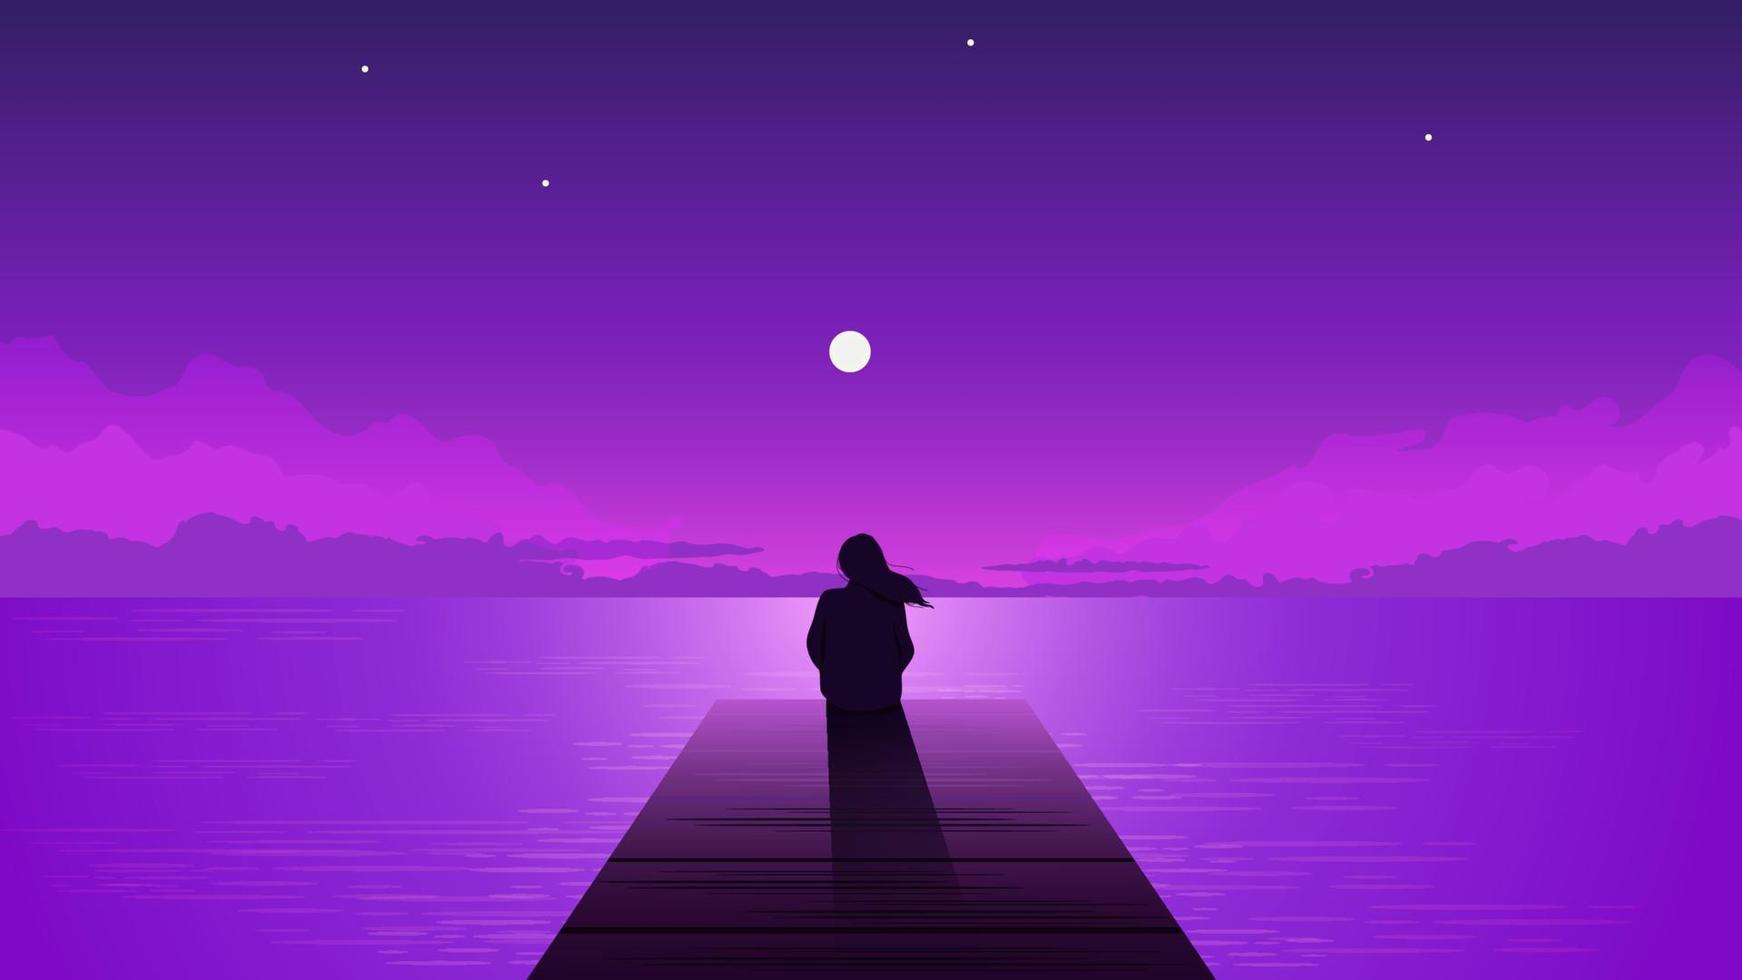 Nachtsilhouette einsames Mädchen mit aufgehendem Mond. allein verträumte frau, die lila himmel mit mond zwischen wolken auf seepier illustrationsvektor person einsamkeit nachdenkliche depression betrachtet. vektor